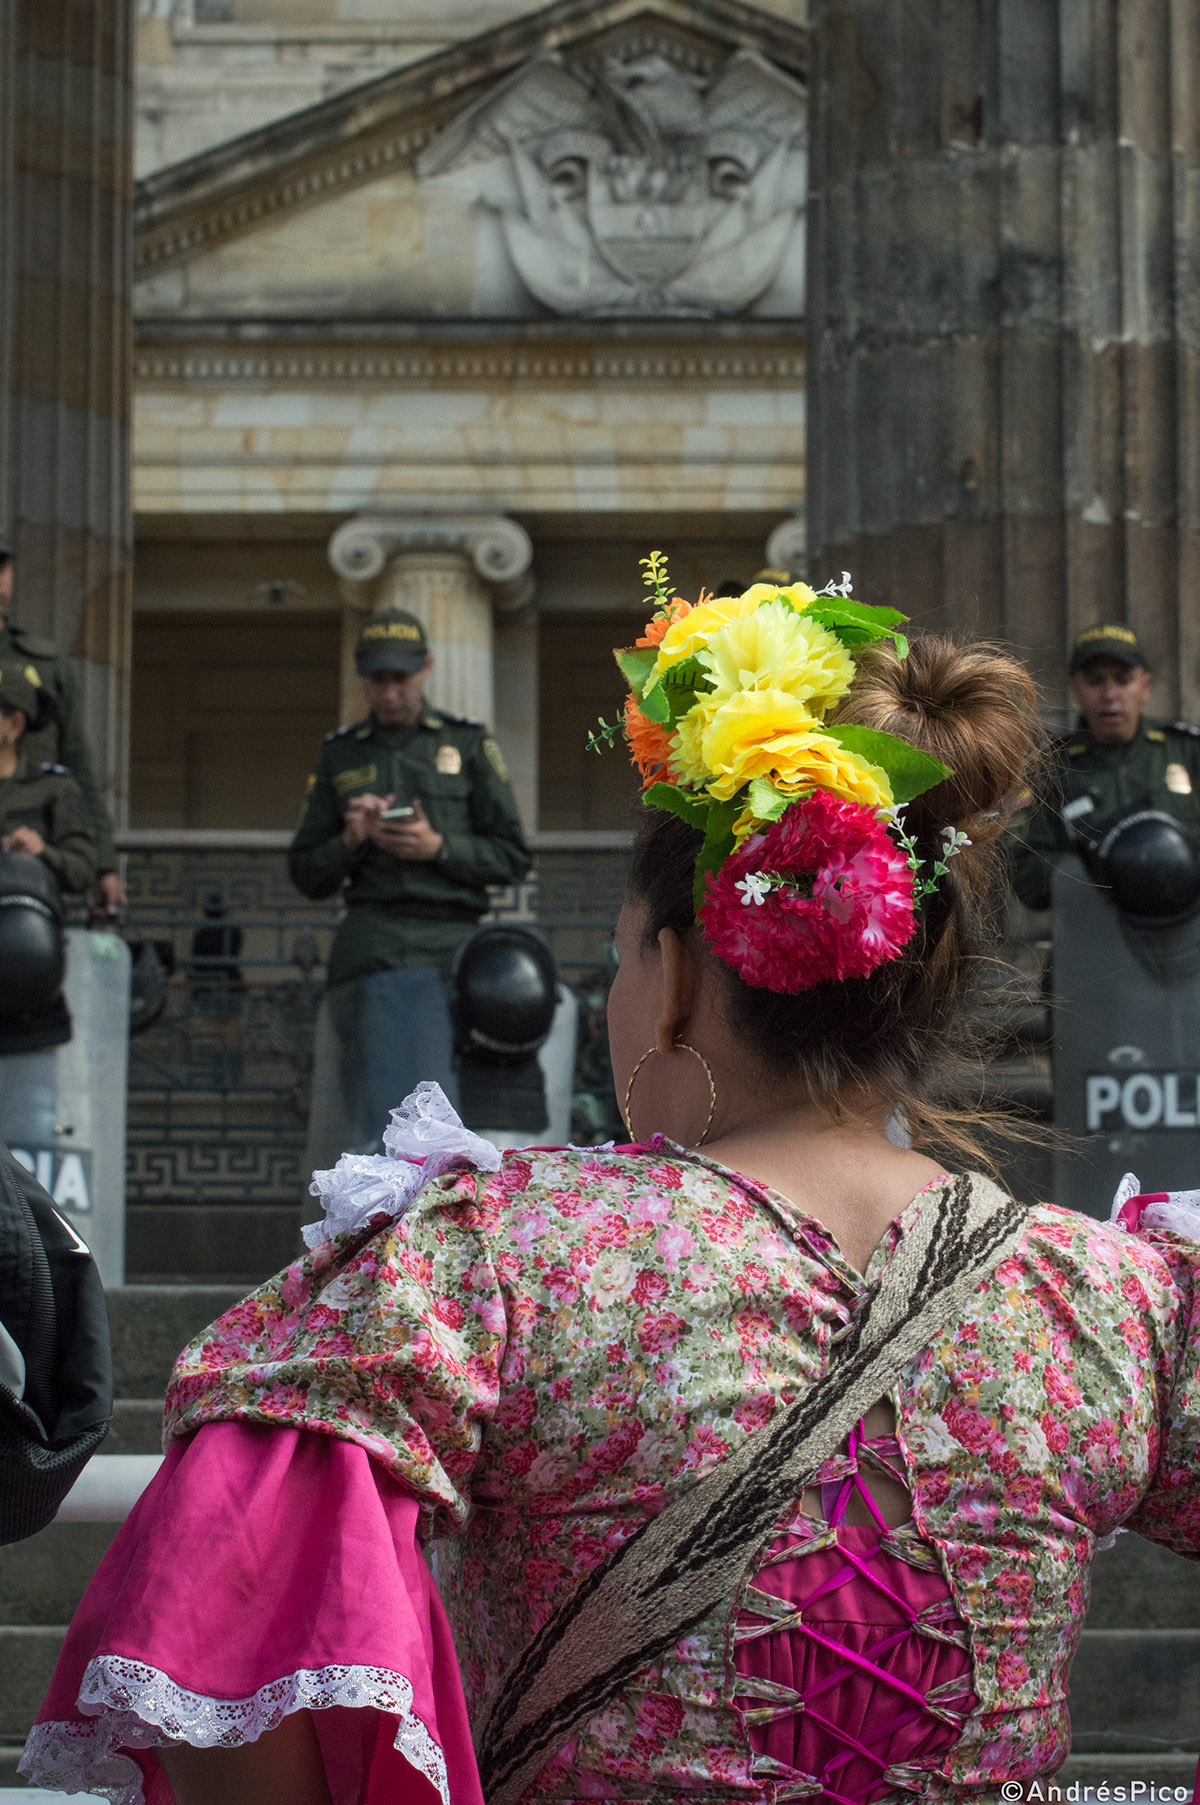 profesores trabajadores colombia bogota marcha voz policia